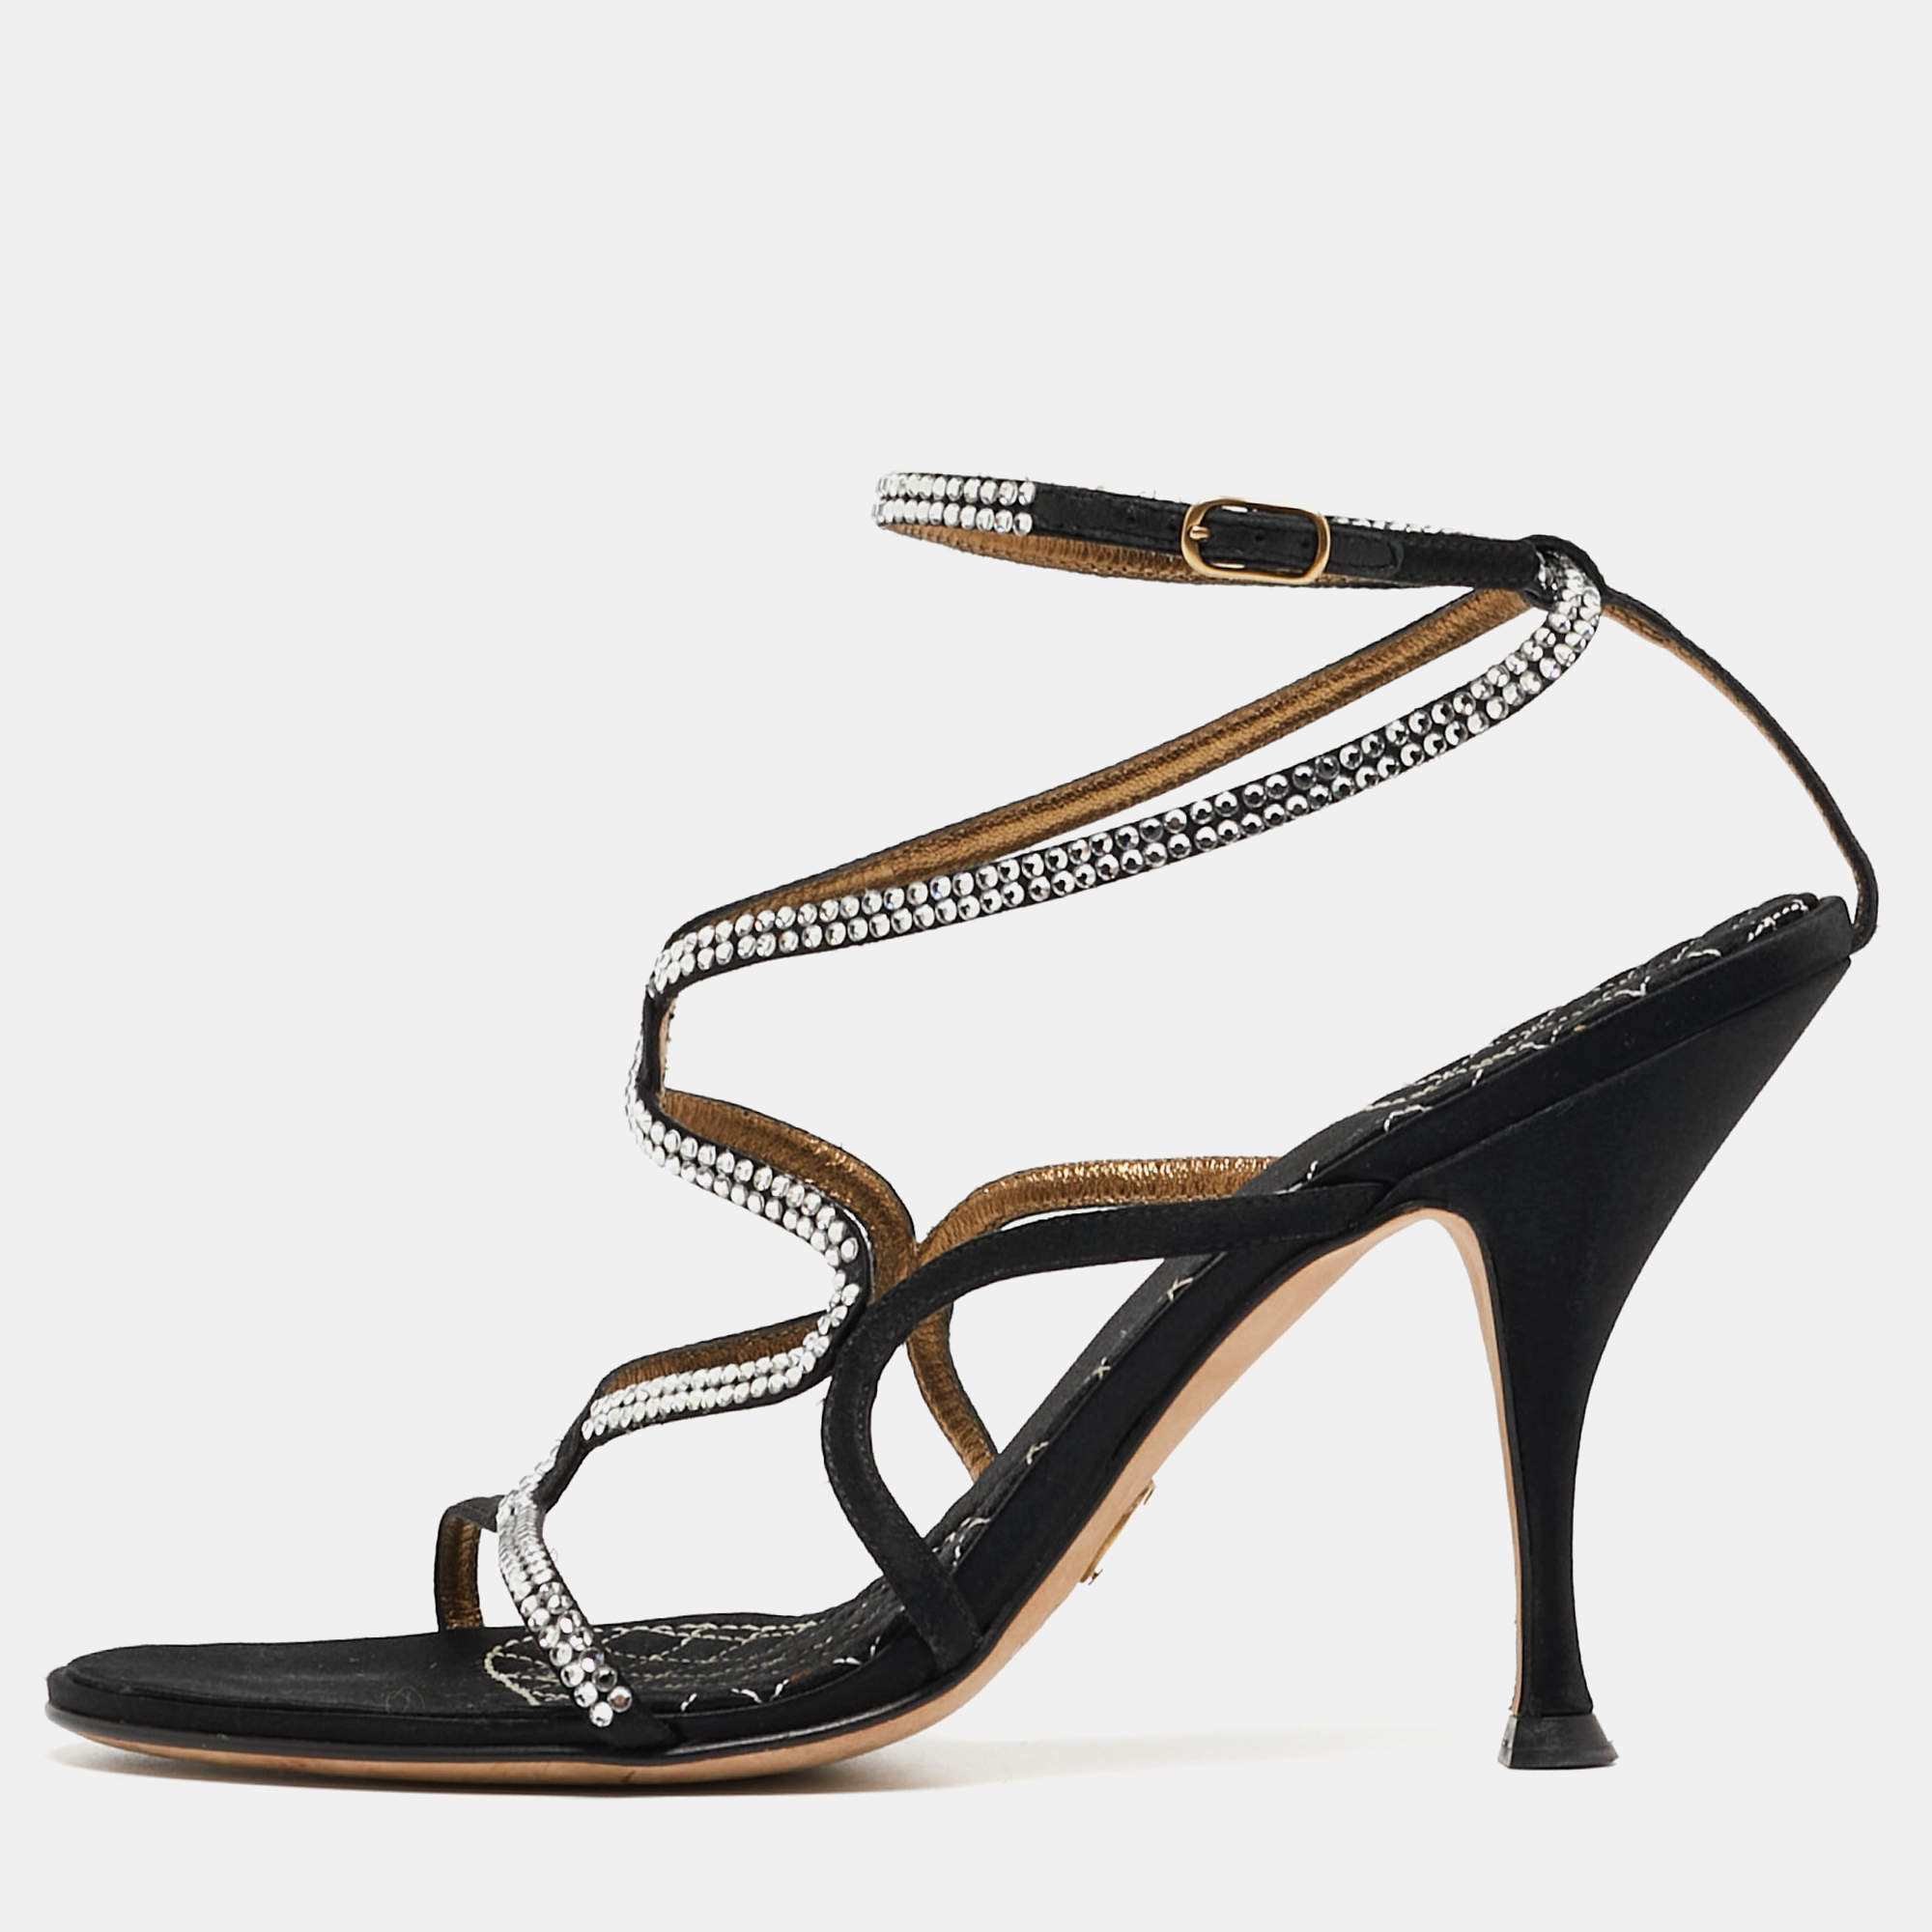 Dolce & Gabbana Black Satin Crystal Embellished Sandals Size 38